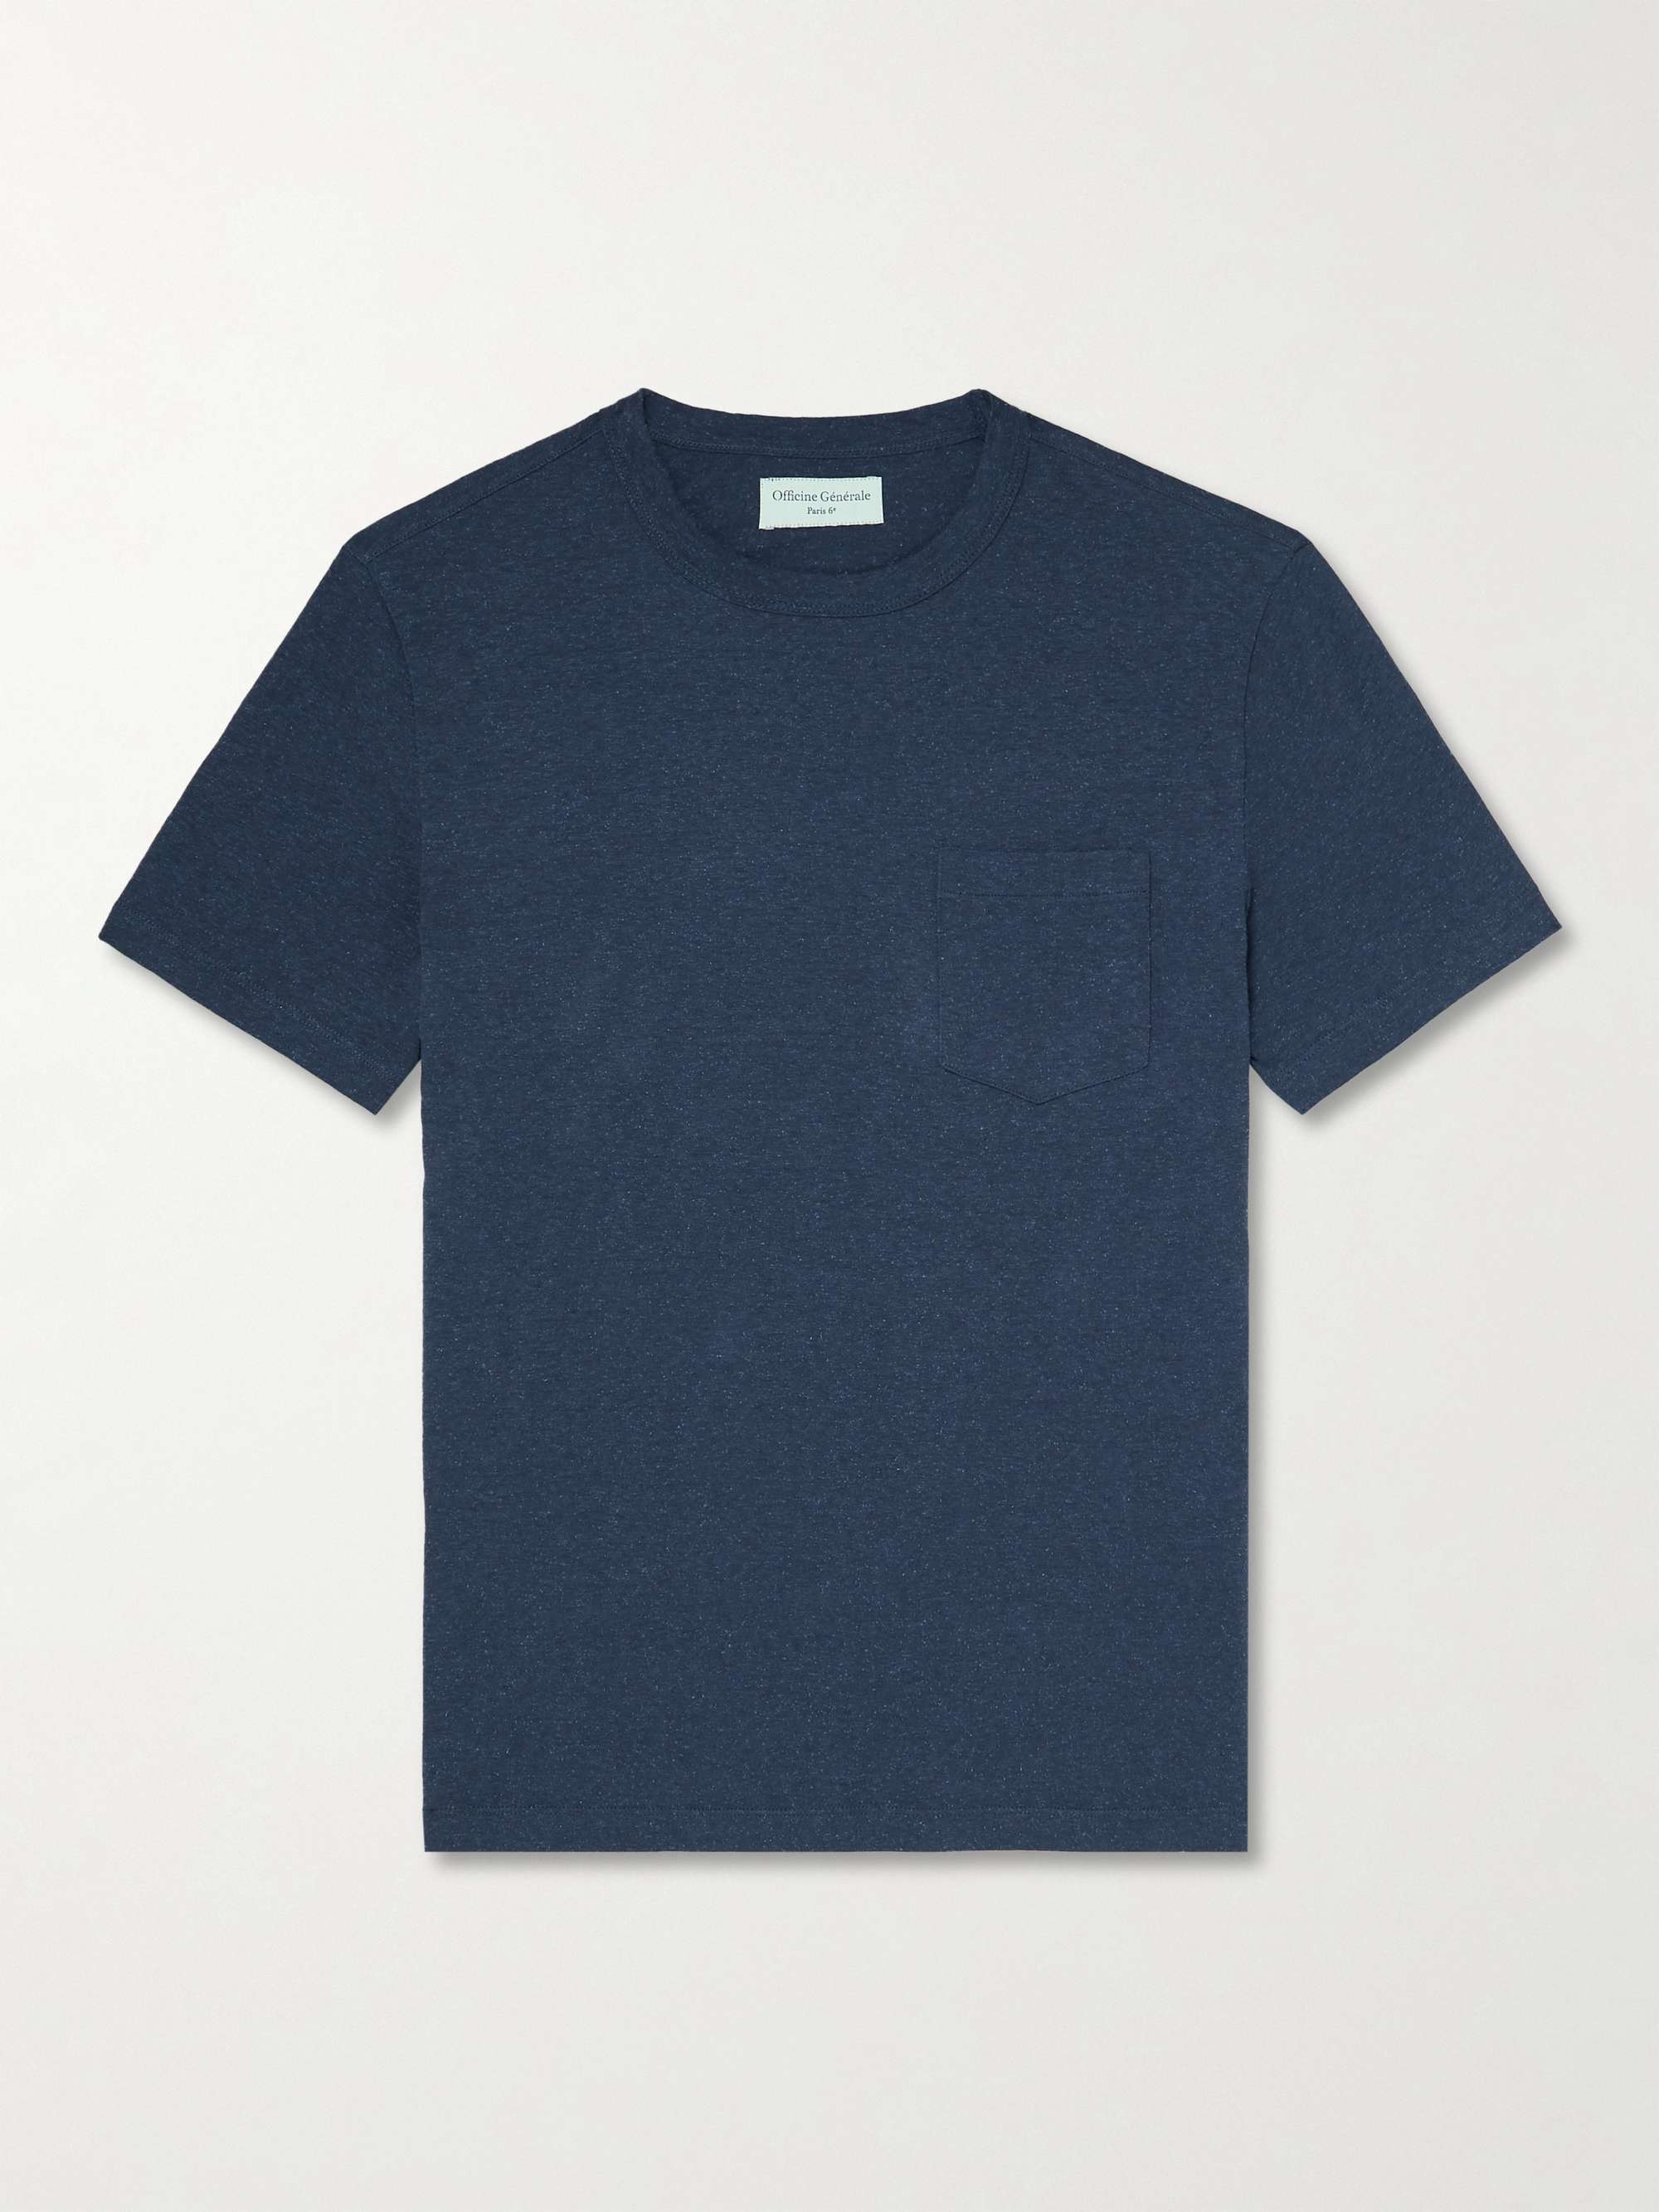 OFFICINE GÉNÉRALE Slub Cotton, Modal and Silk-Blend Jersey T-Shirt